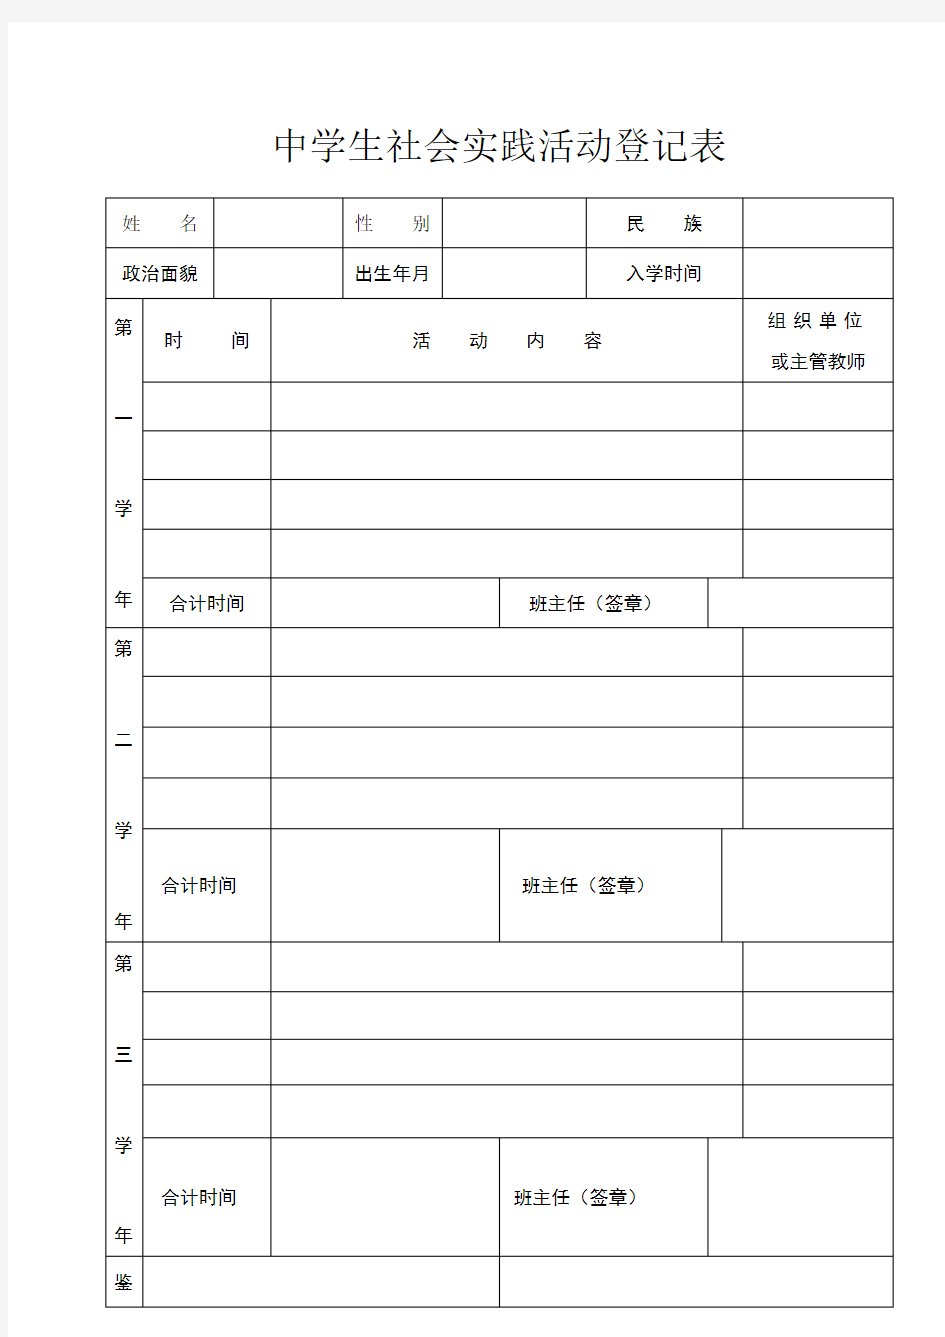 中学生社会实践活动登记表表格